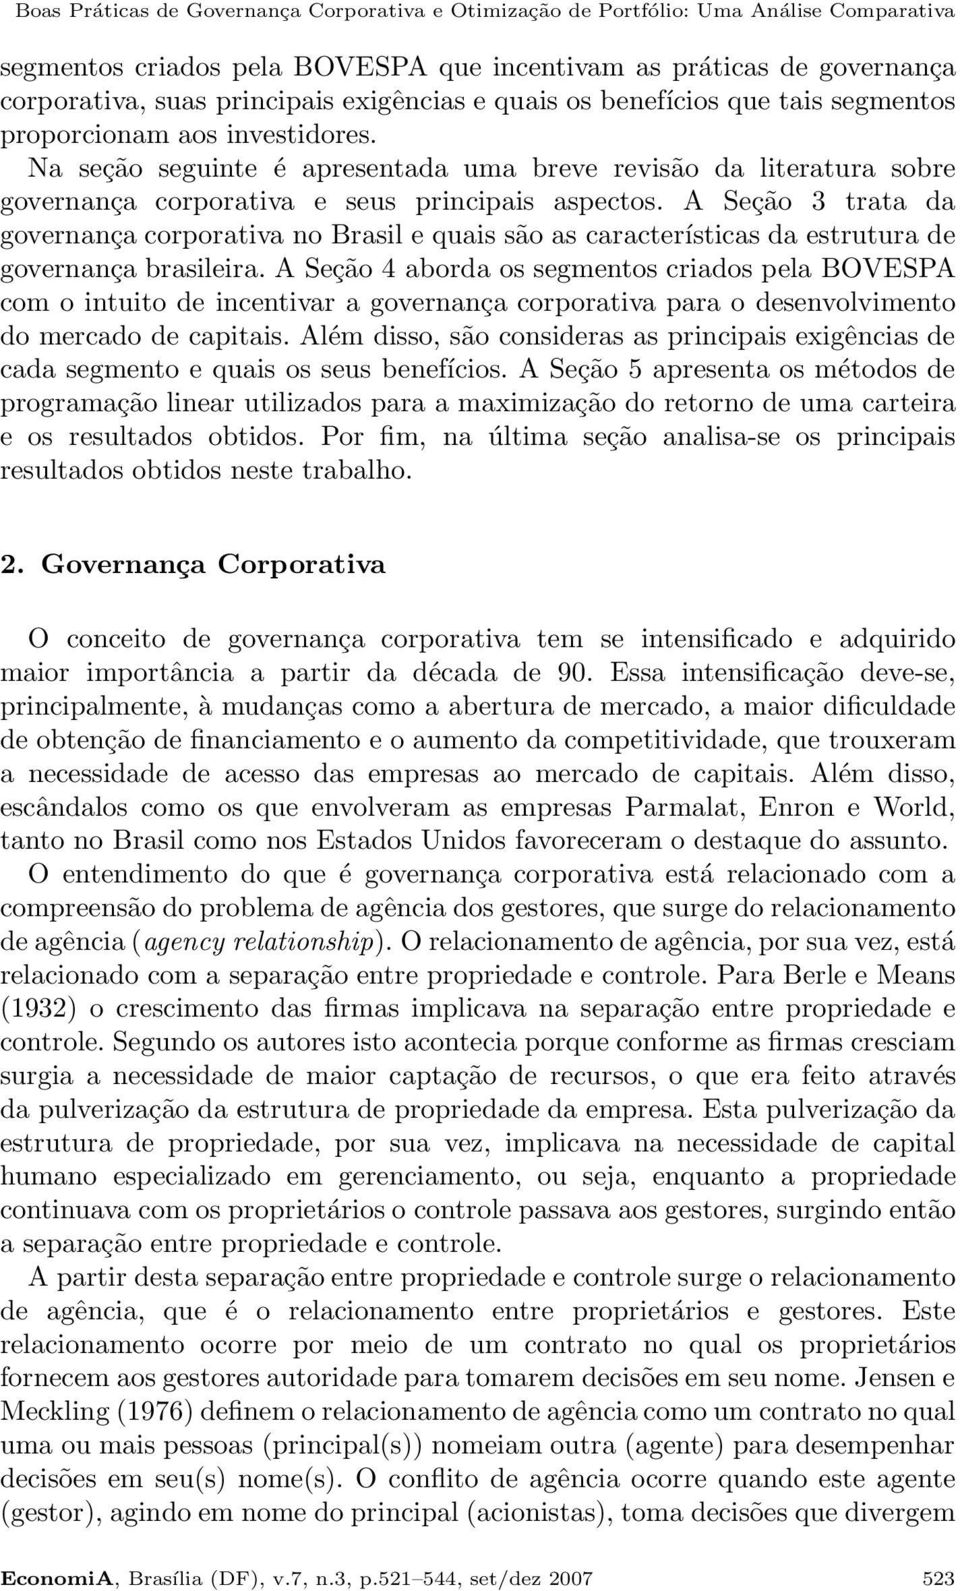 Na seção seguinte é apresentada uma breve revisão da literatura sobre governança corporativa e seus principais aspectos.